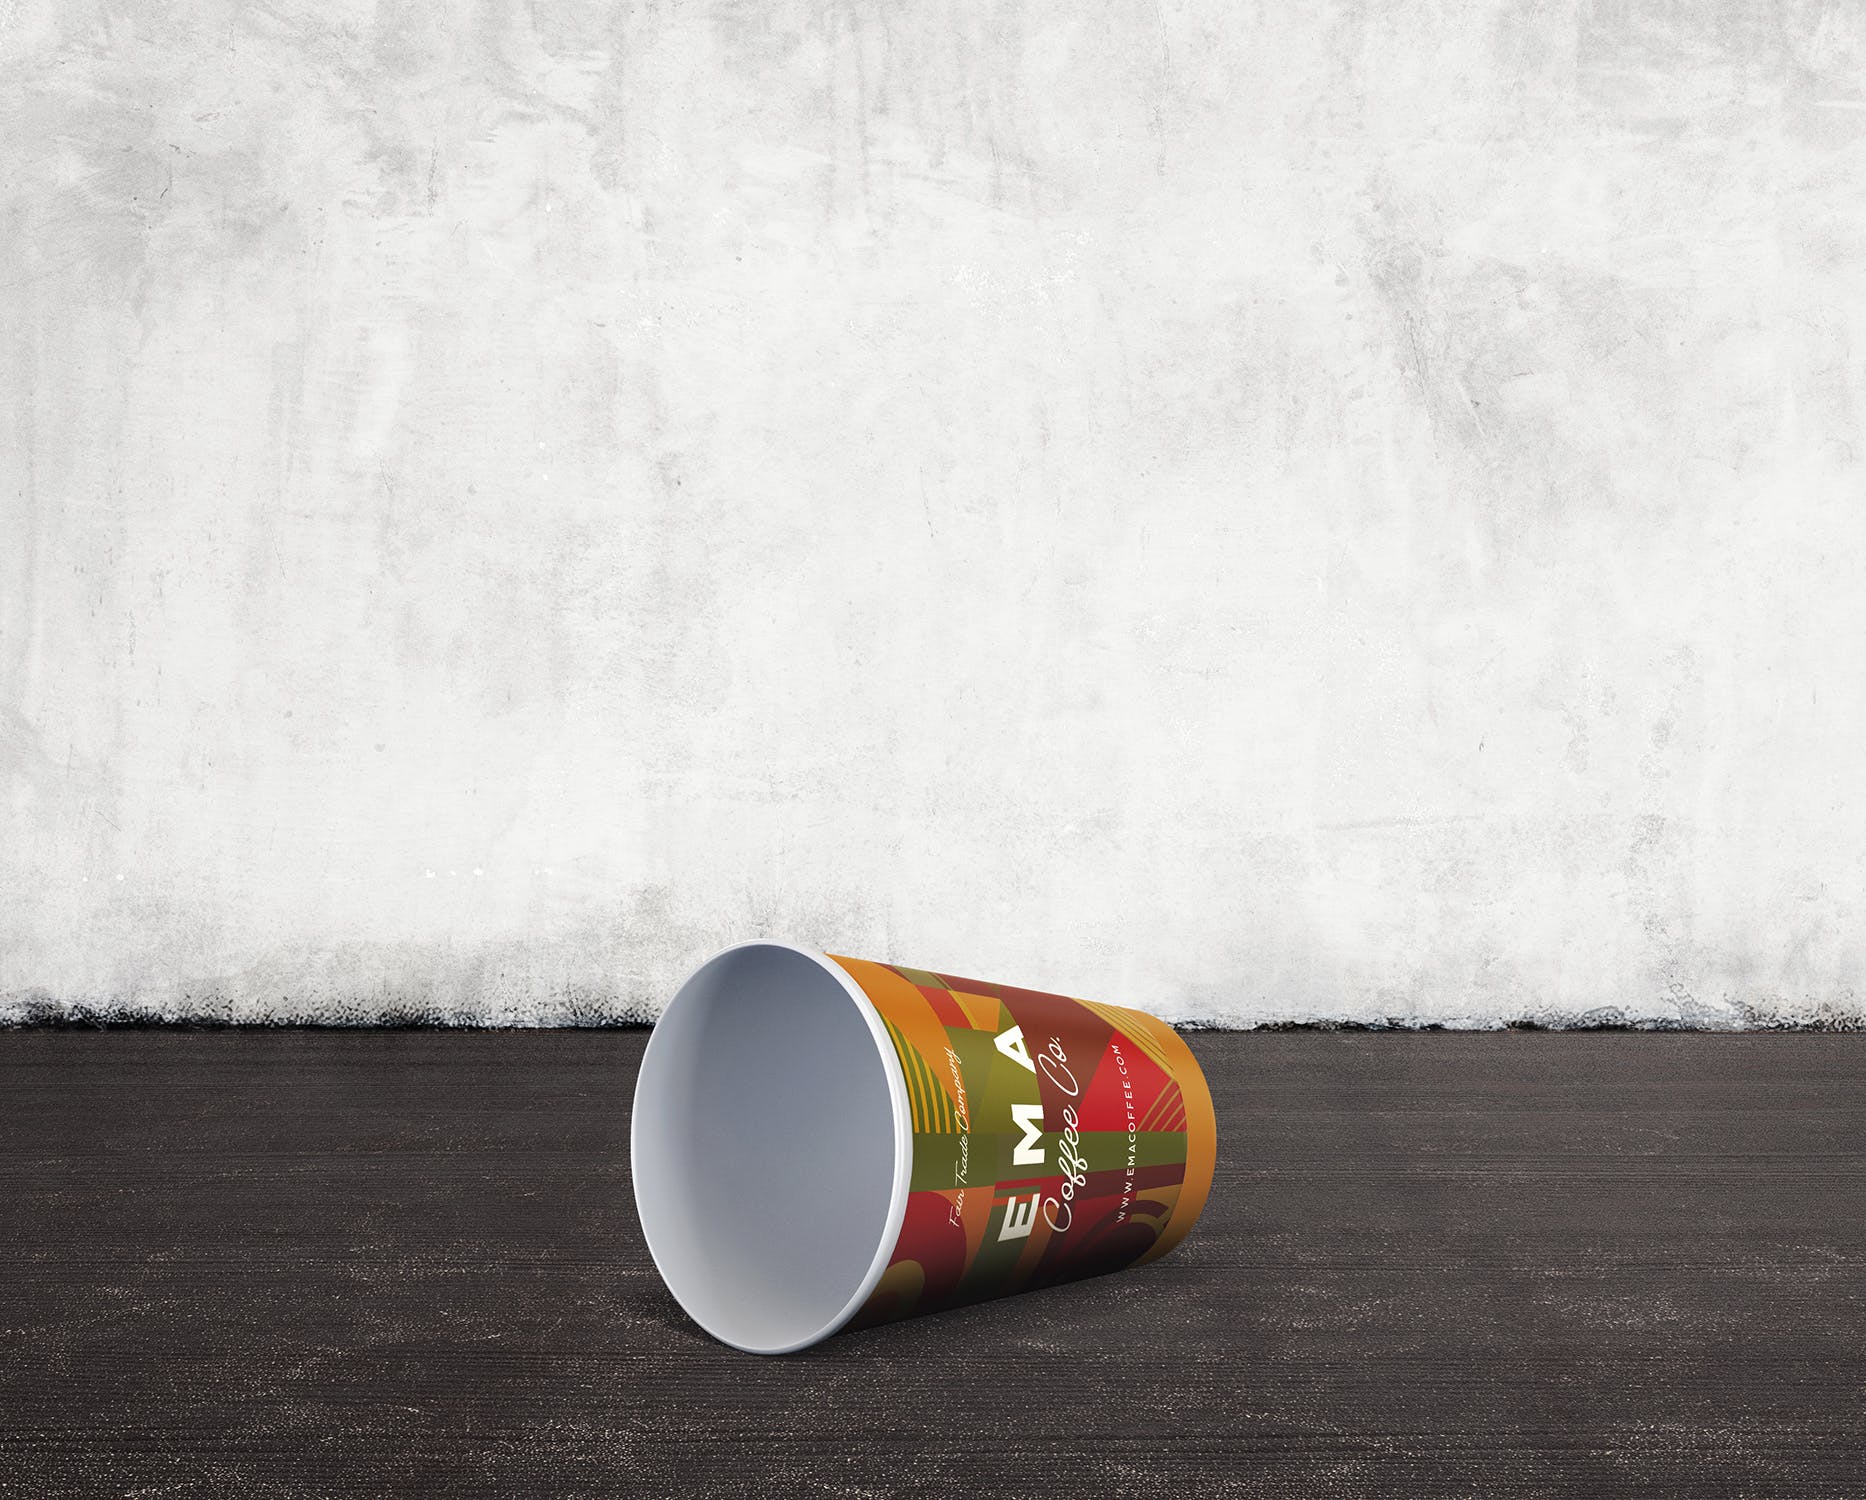 8个咖啡纸杯外观设计效果图第一素材精选 8 Coffee Paper Cup Mockups插图(5)